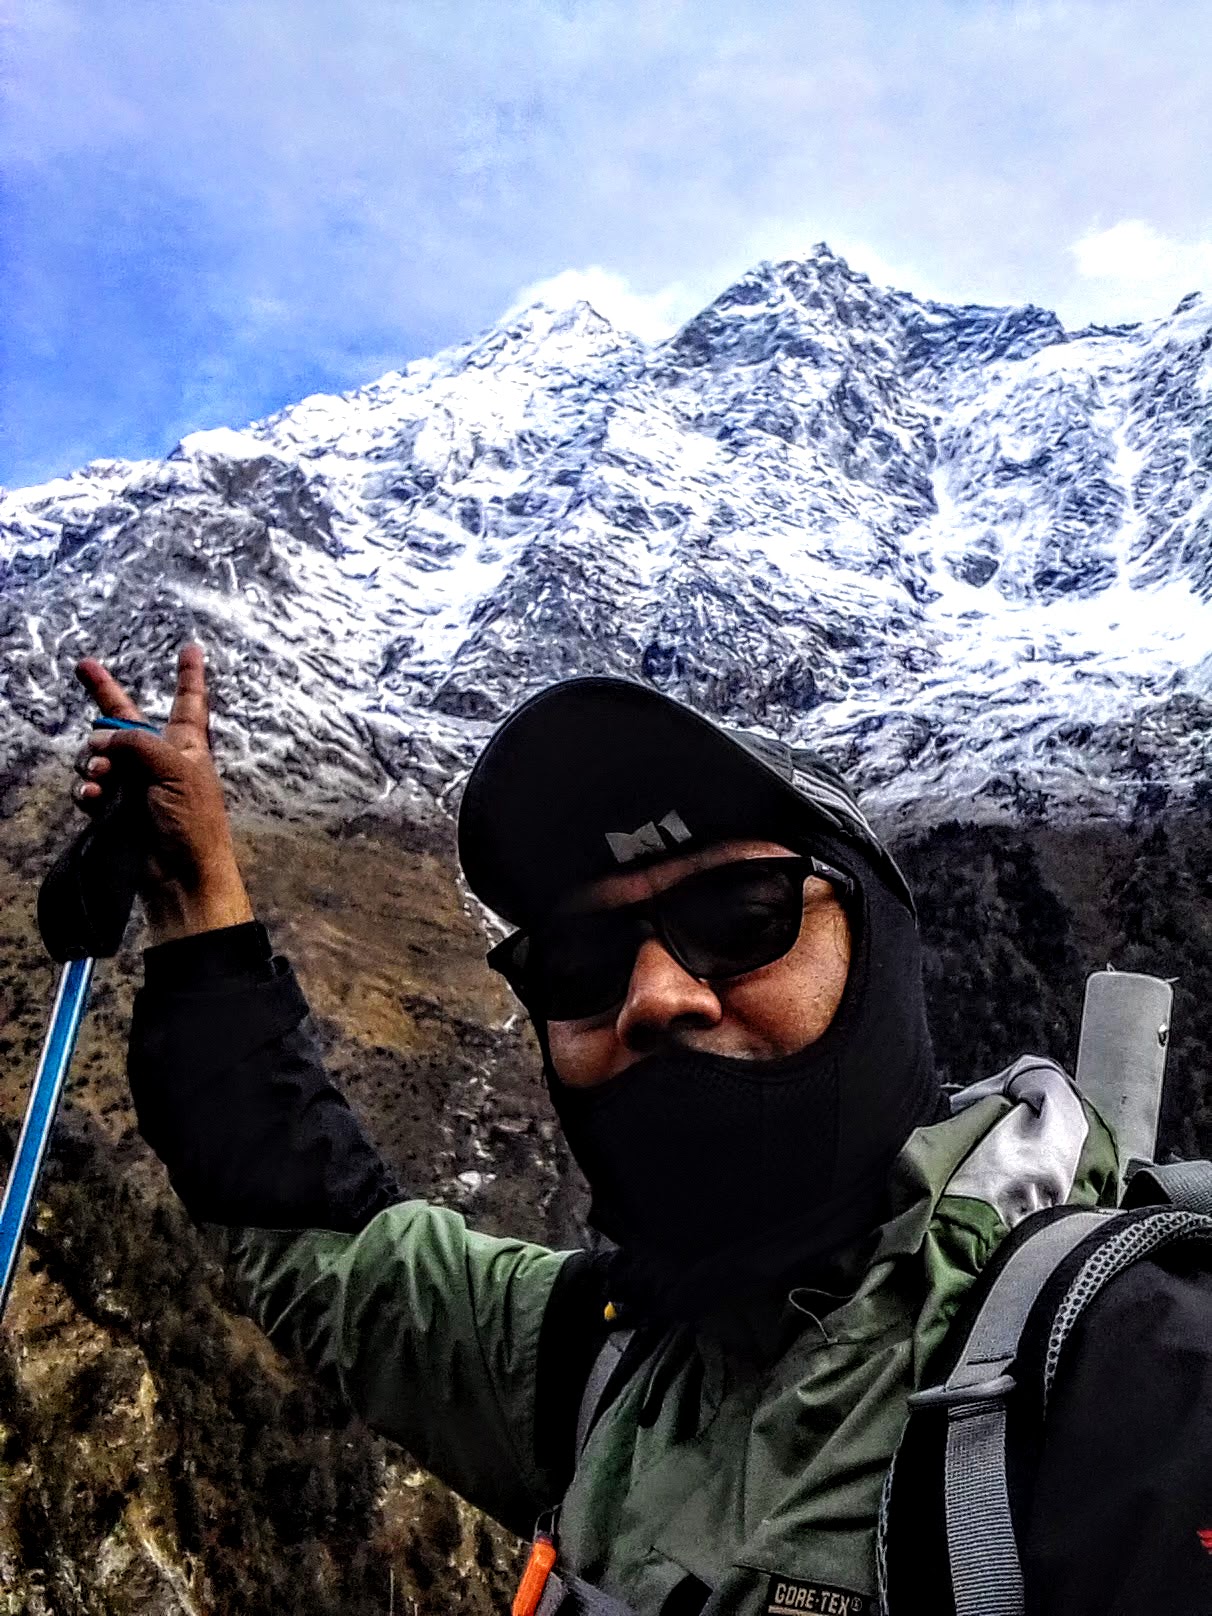 Enjoying View of Manaslu Circuit Mountain | Manaslu Circuit Trek - Hiking Himalayas